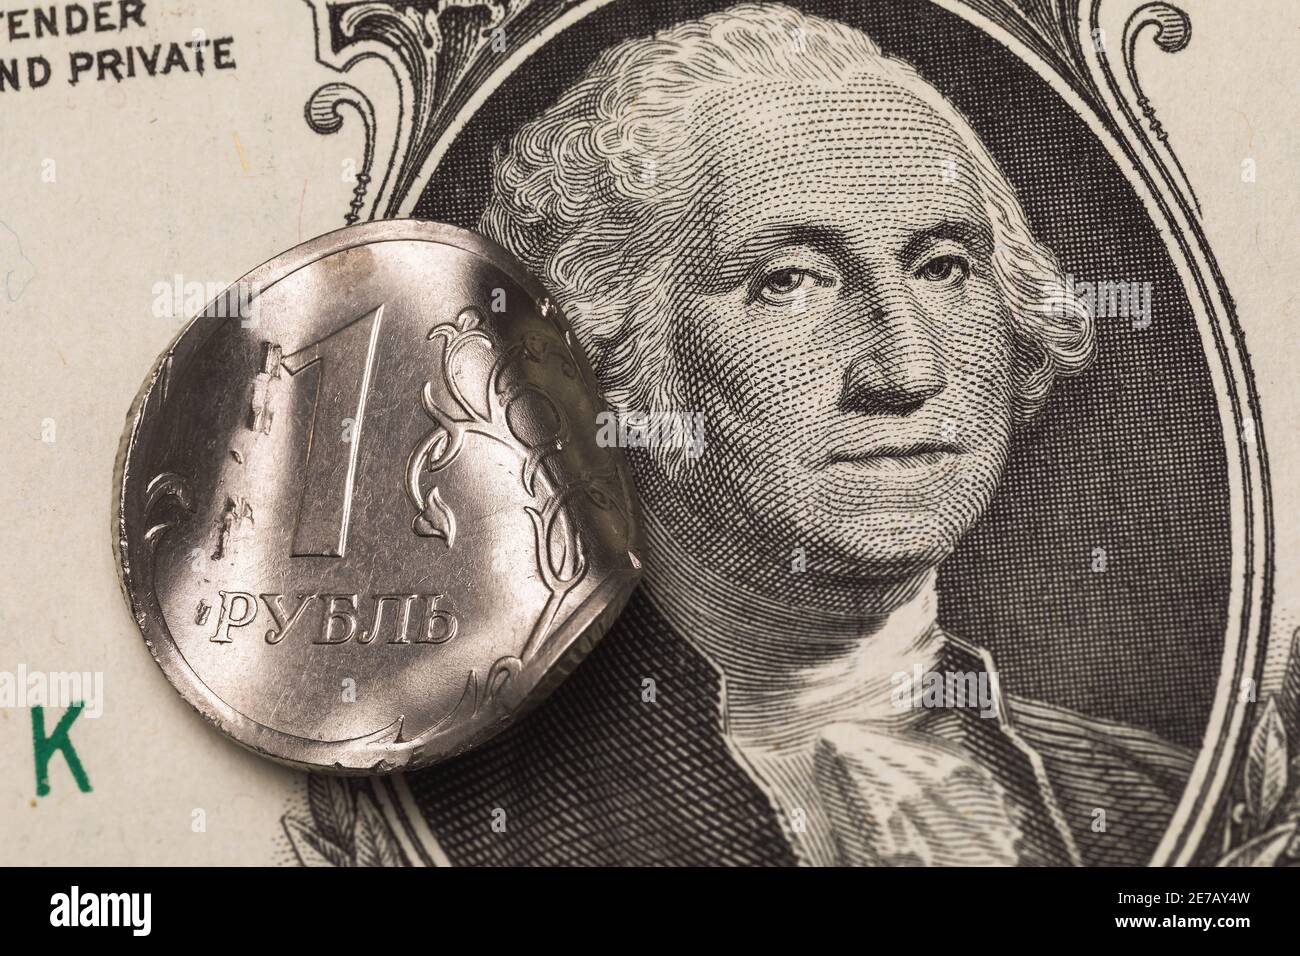 Moneta deformata un rublo sullo sfondo della banconota da dollaro, primo piano. Sulla moneta l'iscrizione in lettere russe ruble. Foto Stock